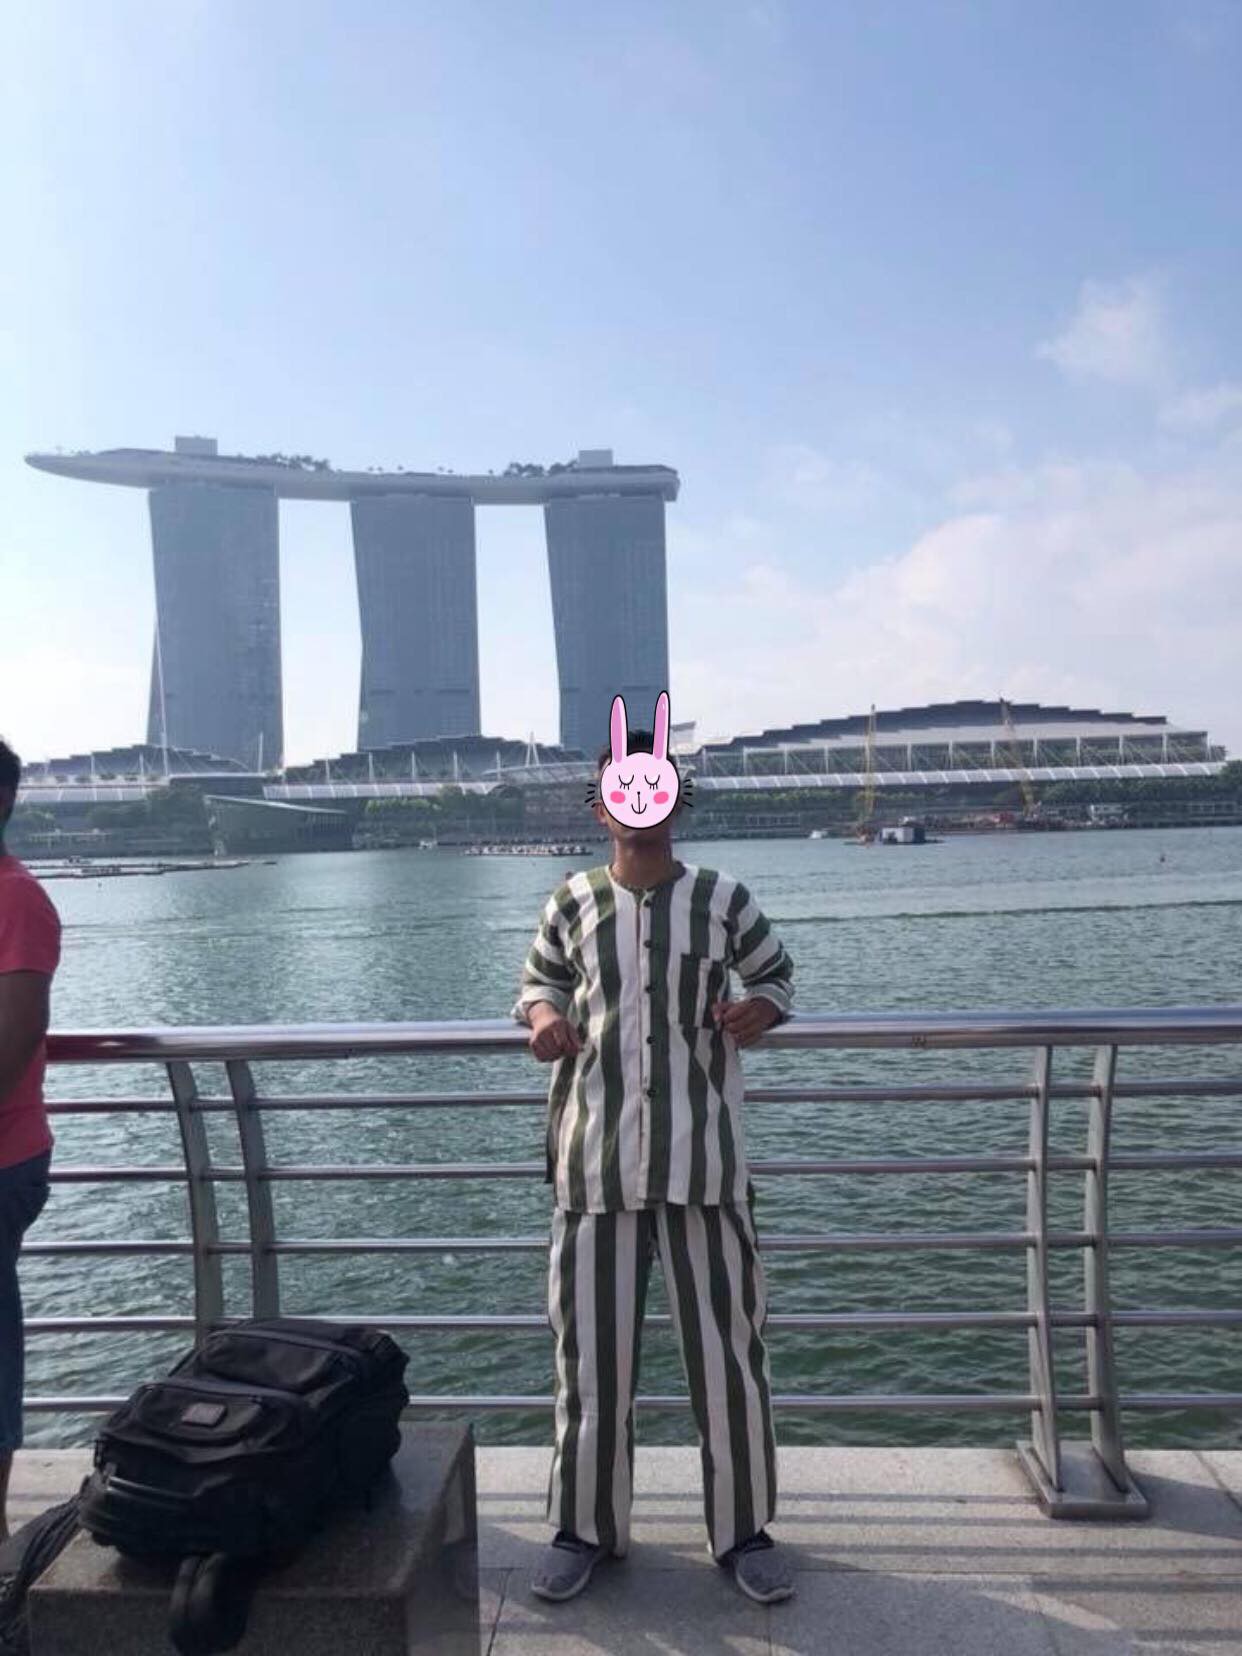 Nóng trên mạng: Thanh niên mặc đồ kẻ sọc giống quần áo phạm nhân check-in ở Singapore khiến dân tình xôn xao - Ảnh 4.